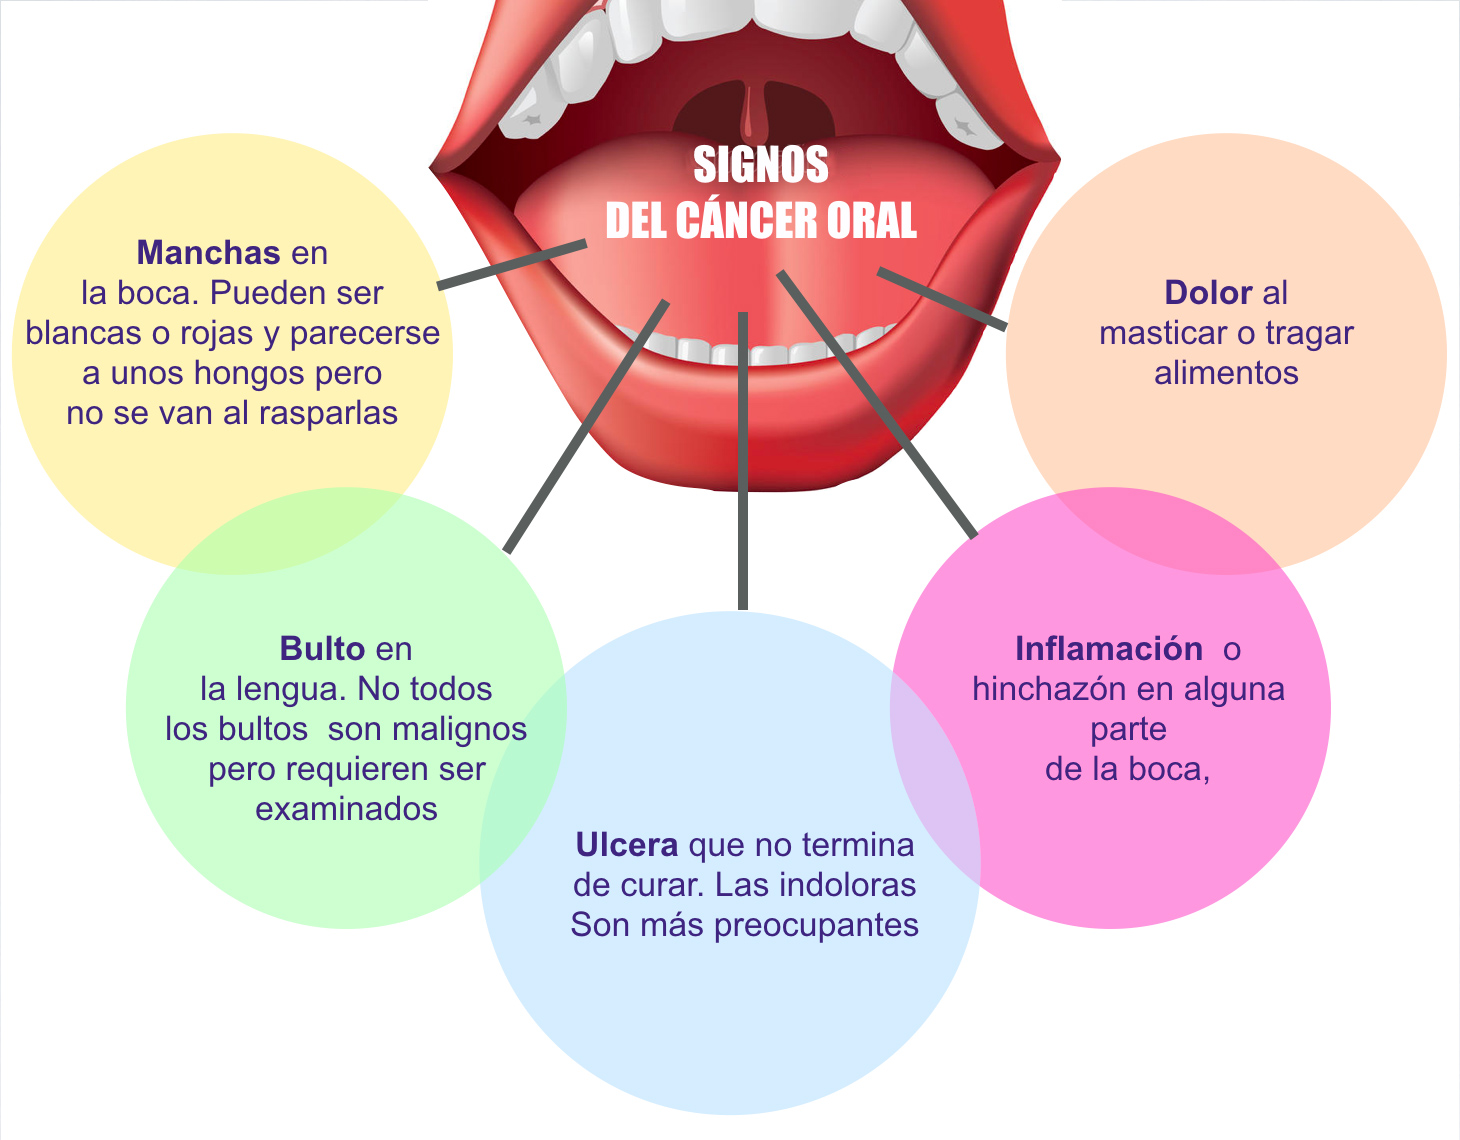 La prevención y el diagnóstico son indispensables contra el cáncer oral